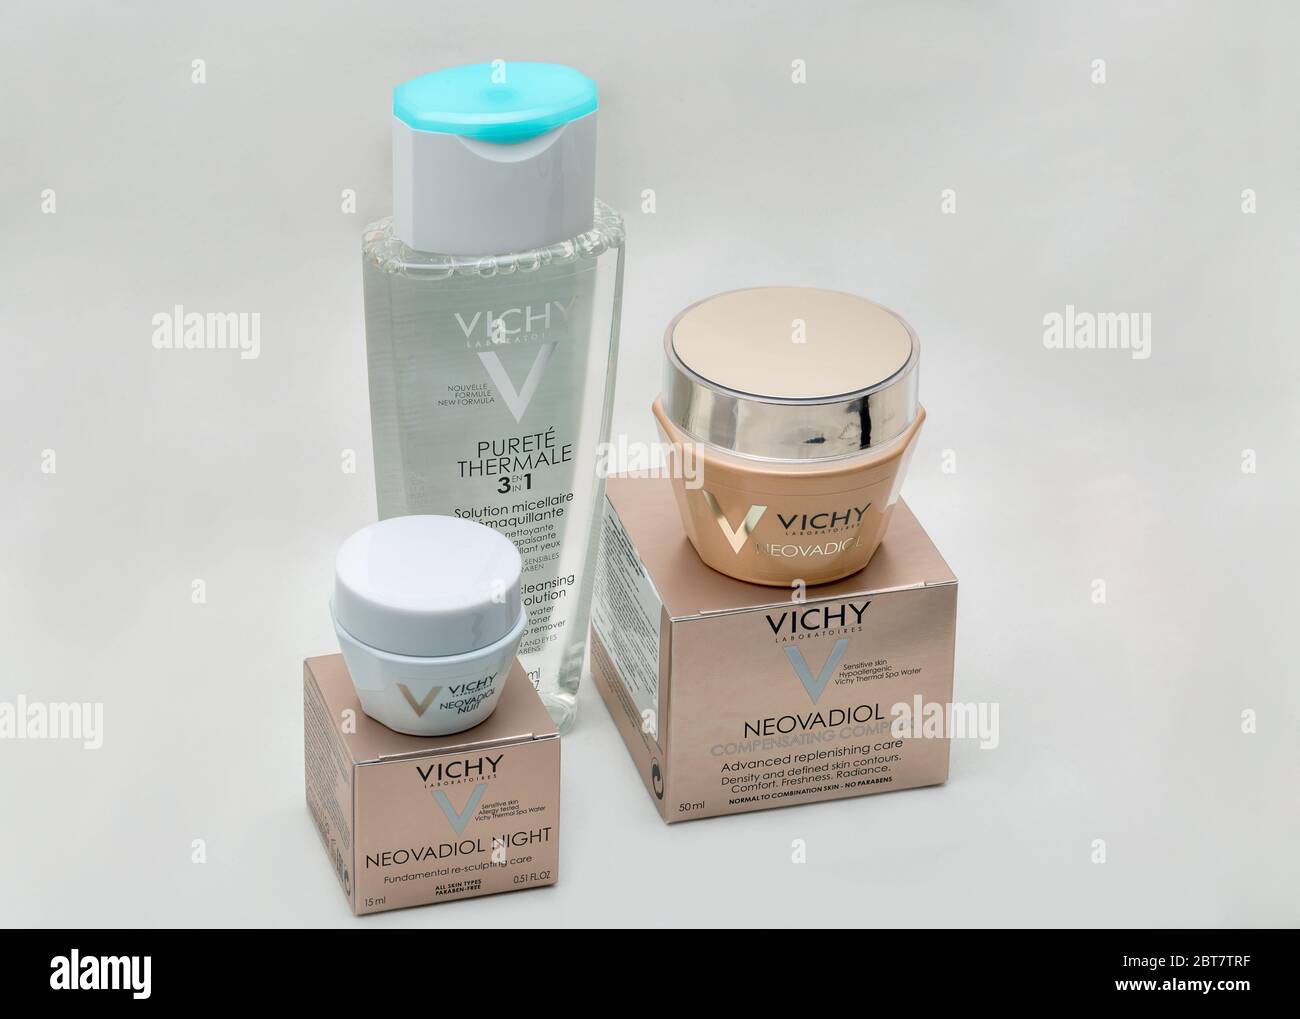 KIEV, UKRAINE - 27 OCTOBRE 2019 : Vichy laboratoires cosmétiques gros plan sur fond blanc. Vichy est une marque de soins de la peau, du corps, de make- Banque D'Images